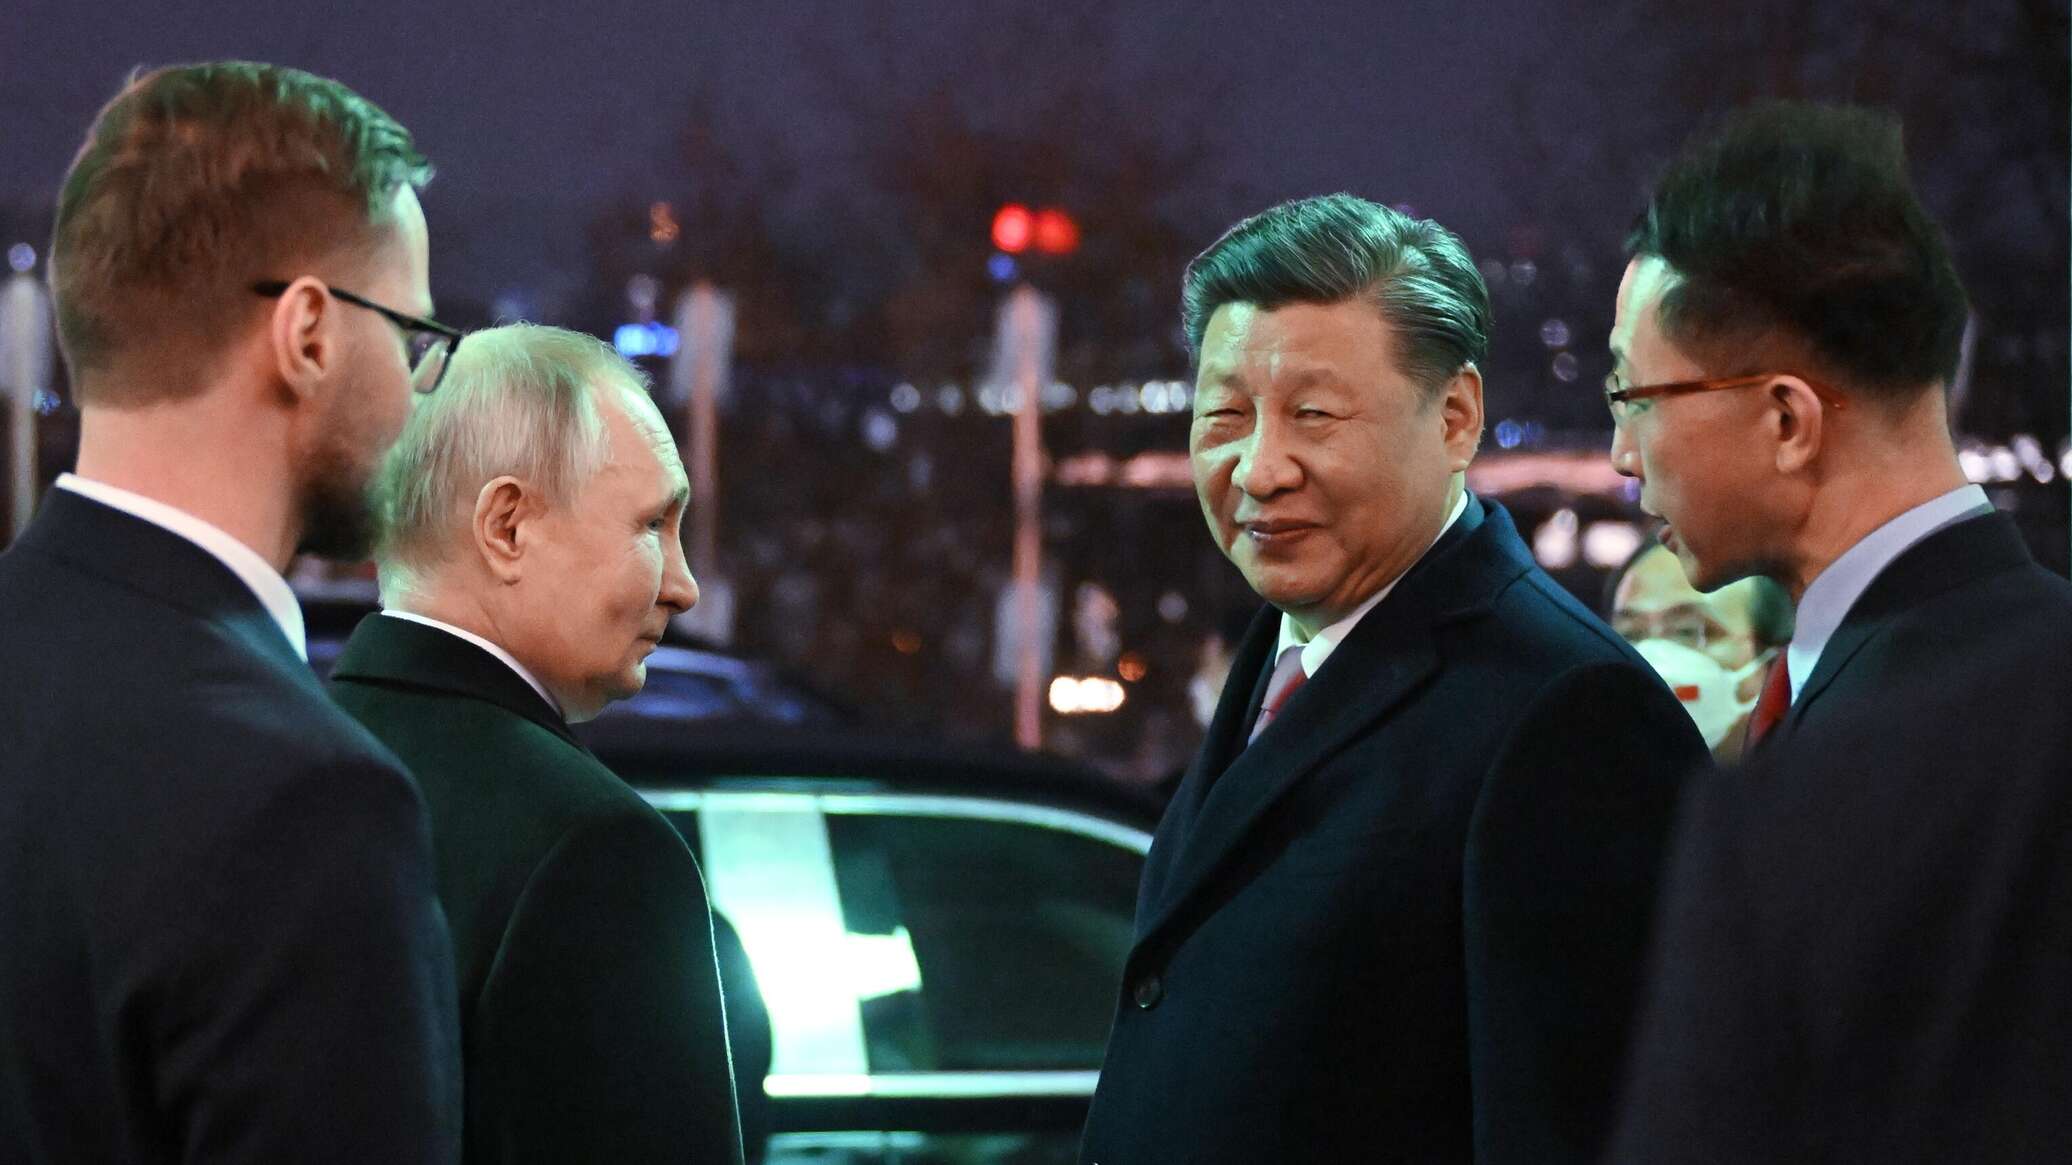 بوتين يصف نظيره الصيني "بالقائد العالمي الحقيقي" عكس "القادة عديمي التأثير"